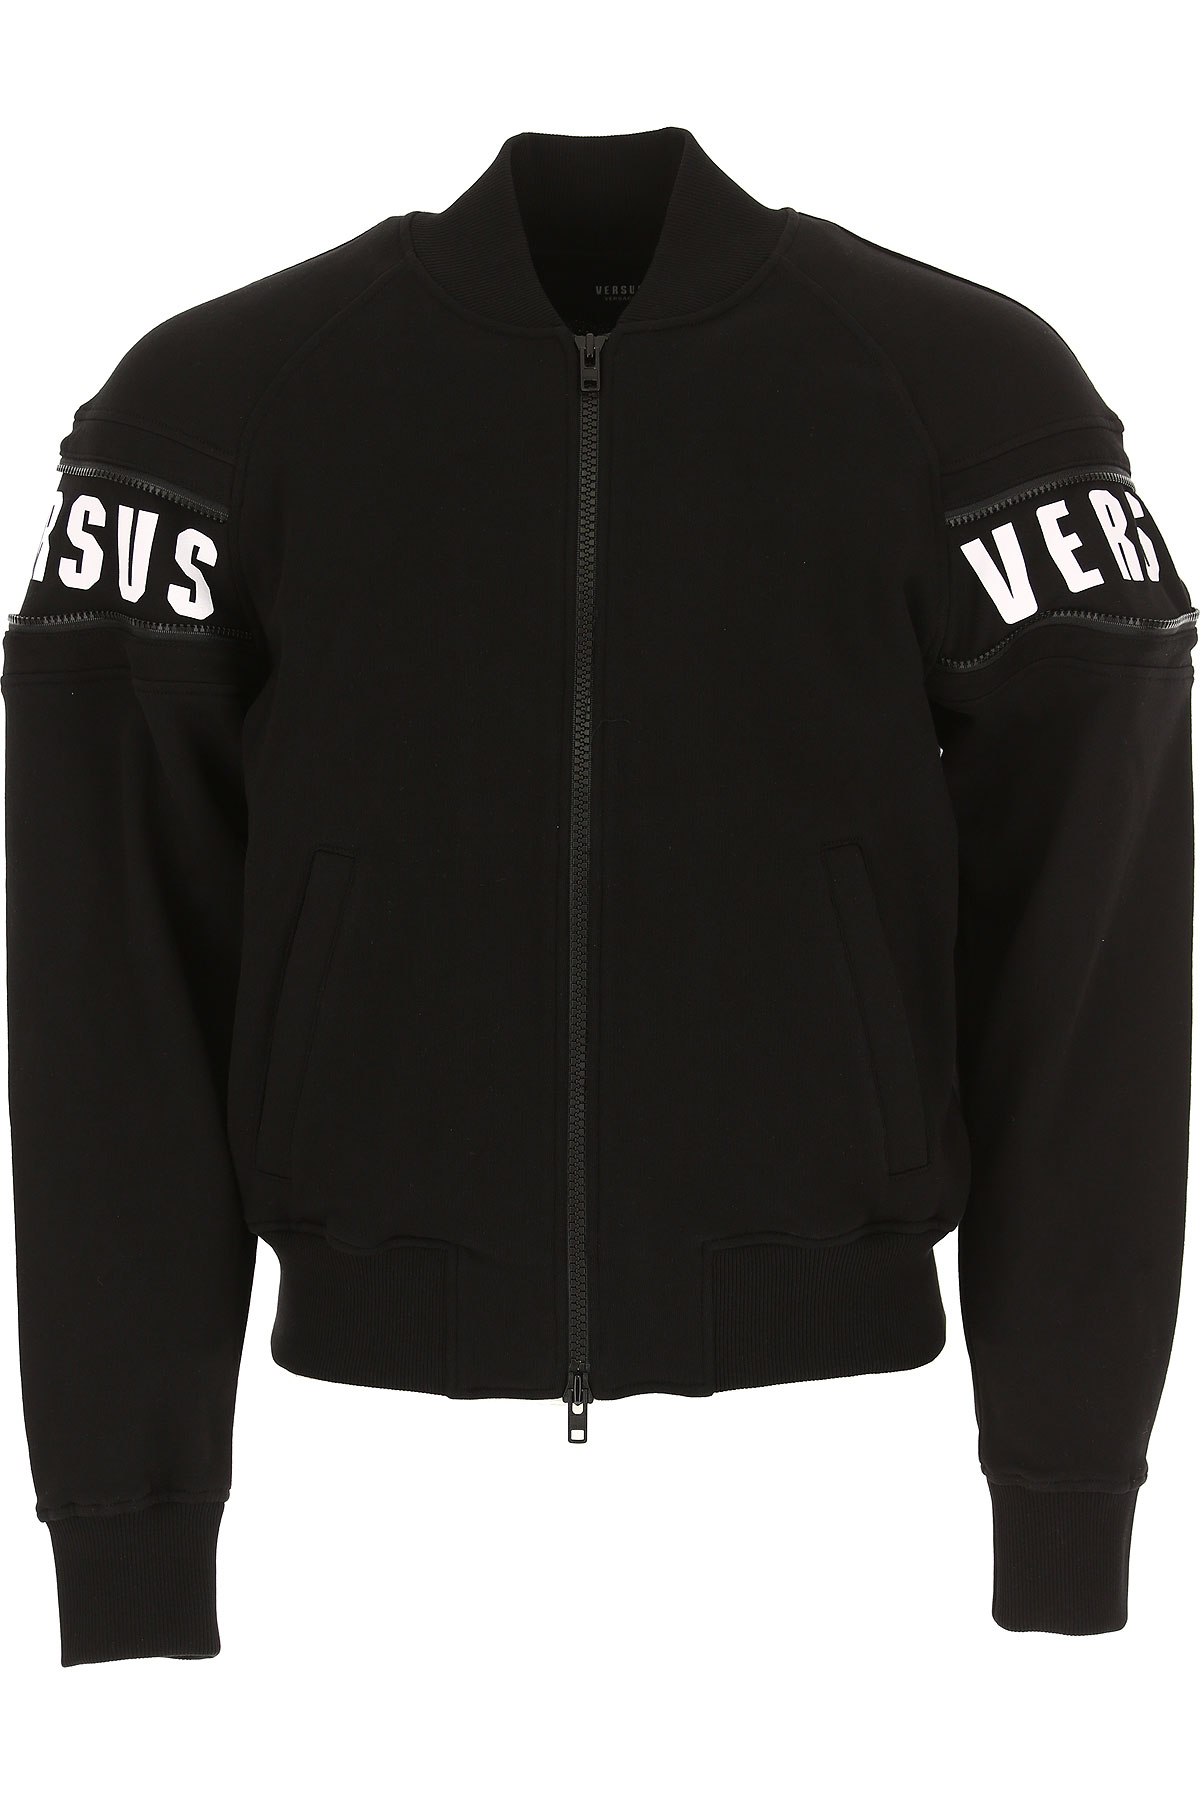 Versace Veste Homme, Noir, Coton, 2017, L M S XL